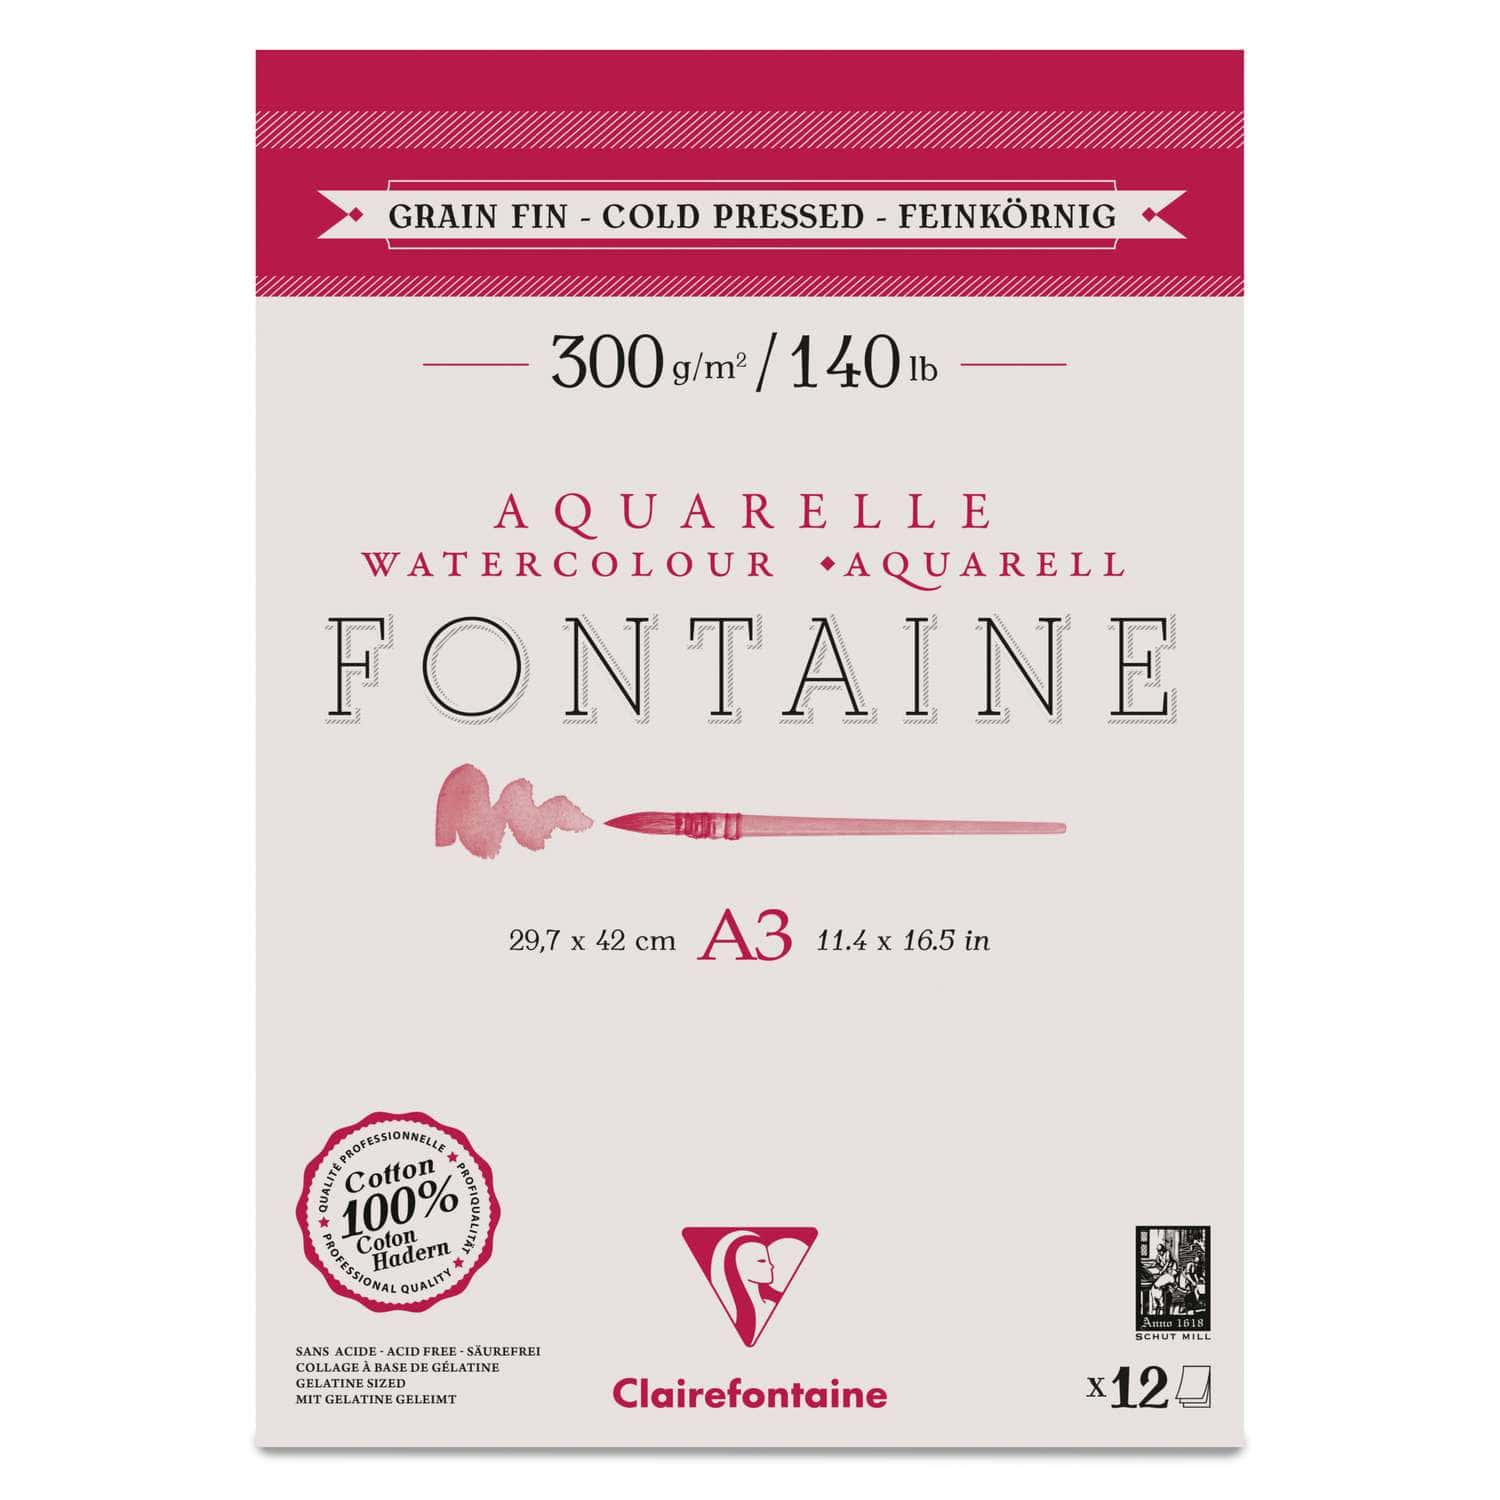 Papier Aquarelle Fontaine de Clairefontaine (Grain Fin 300g/m²)  Le Géant  des Beaux-Arts - N°1 de la vente en ligne de matériels pour Artistes